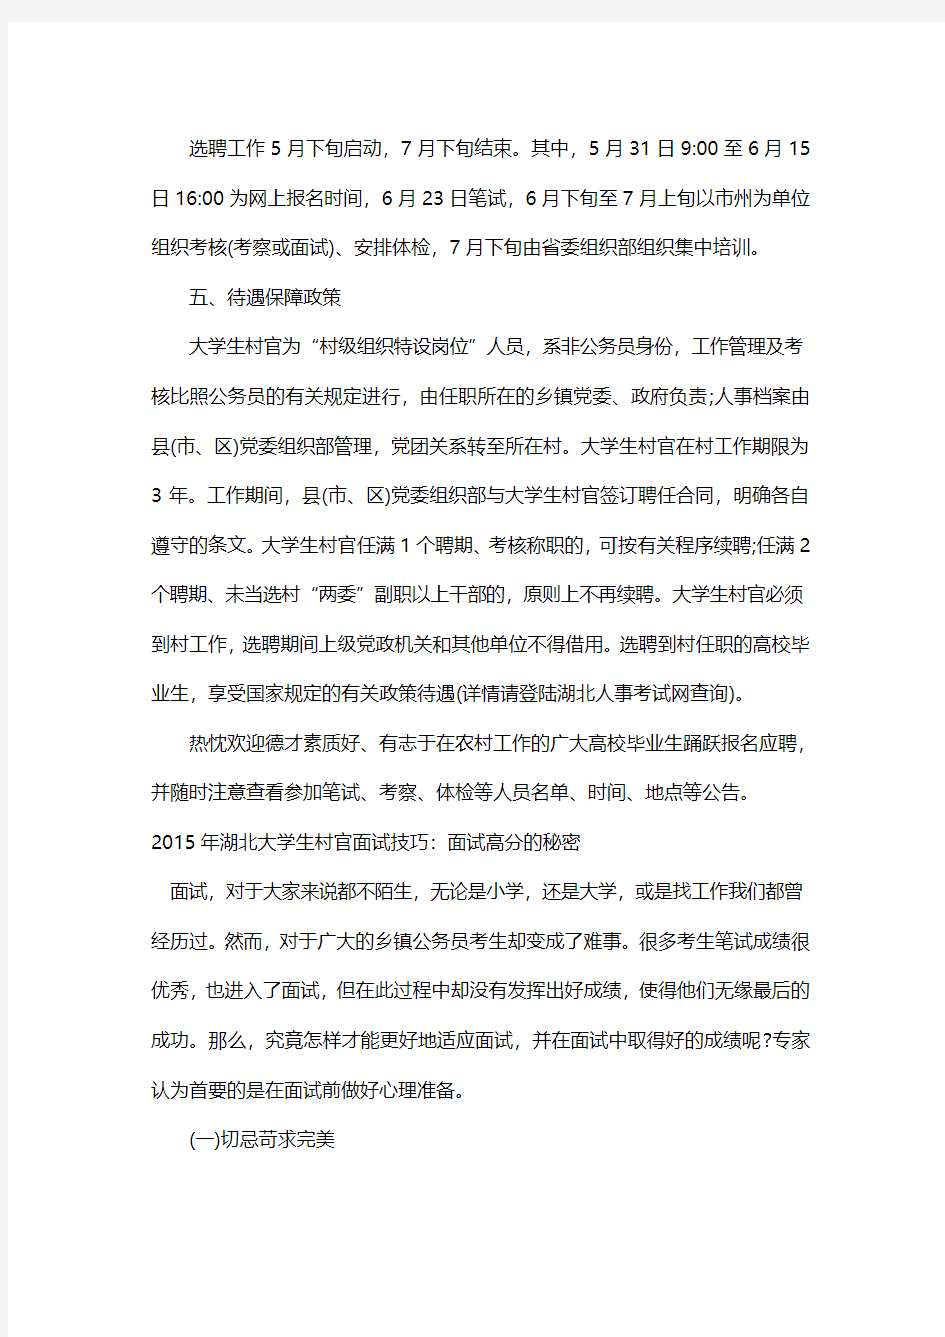 2015湖北省大学生村官考试公告